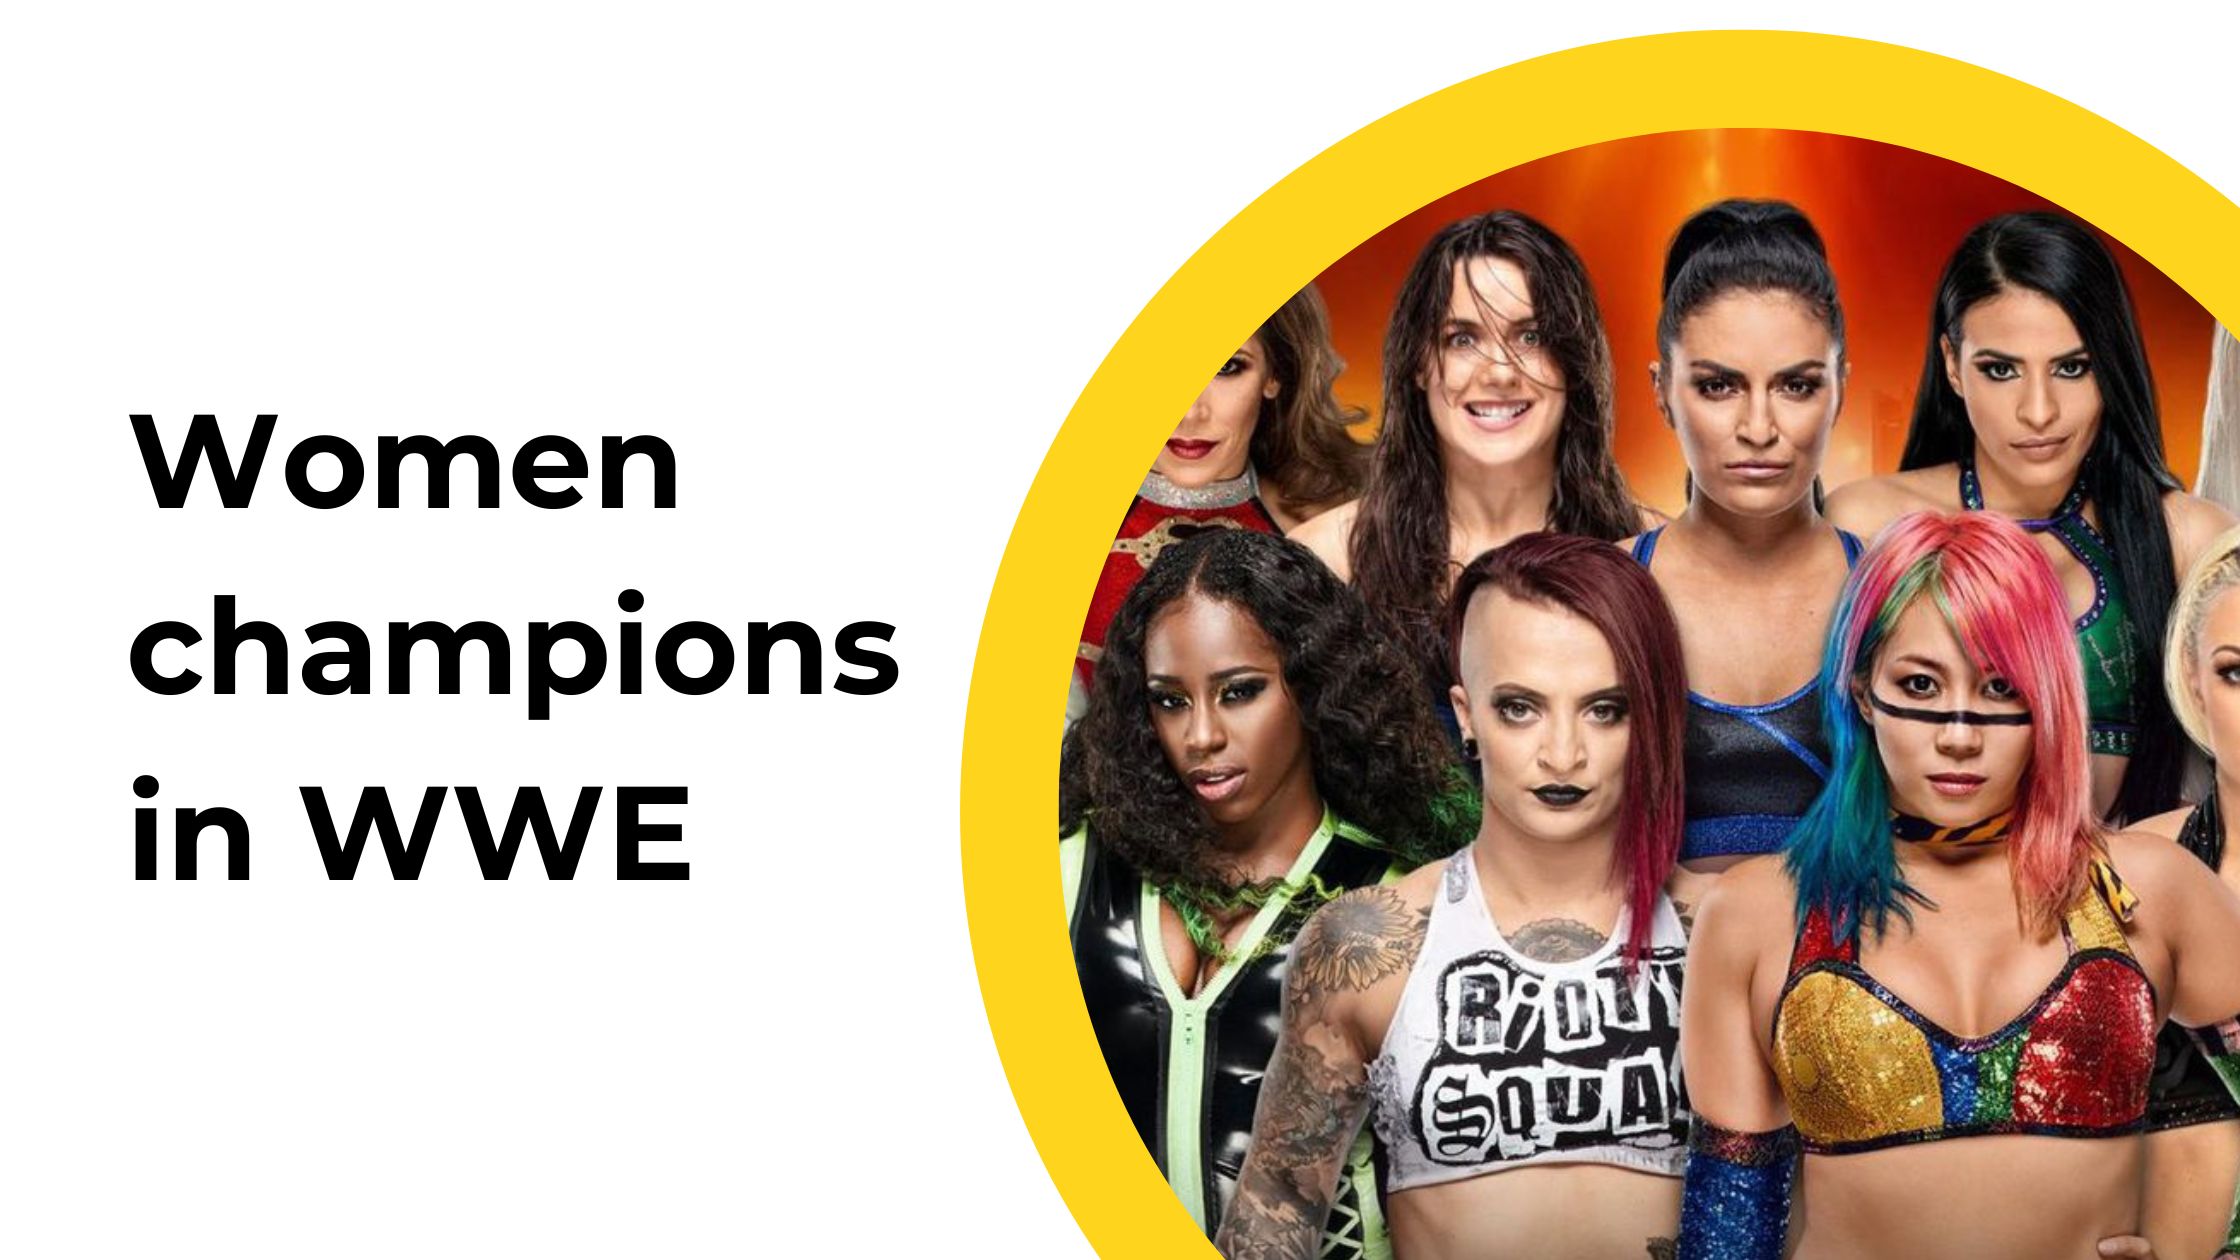 Women champions in WWE